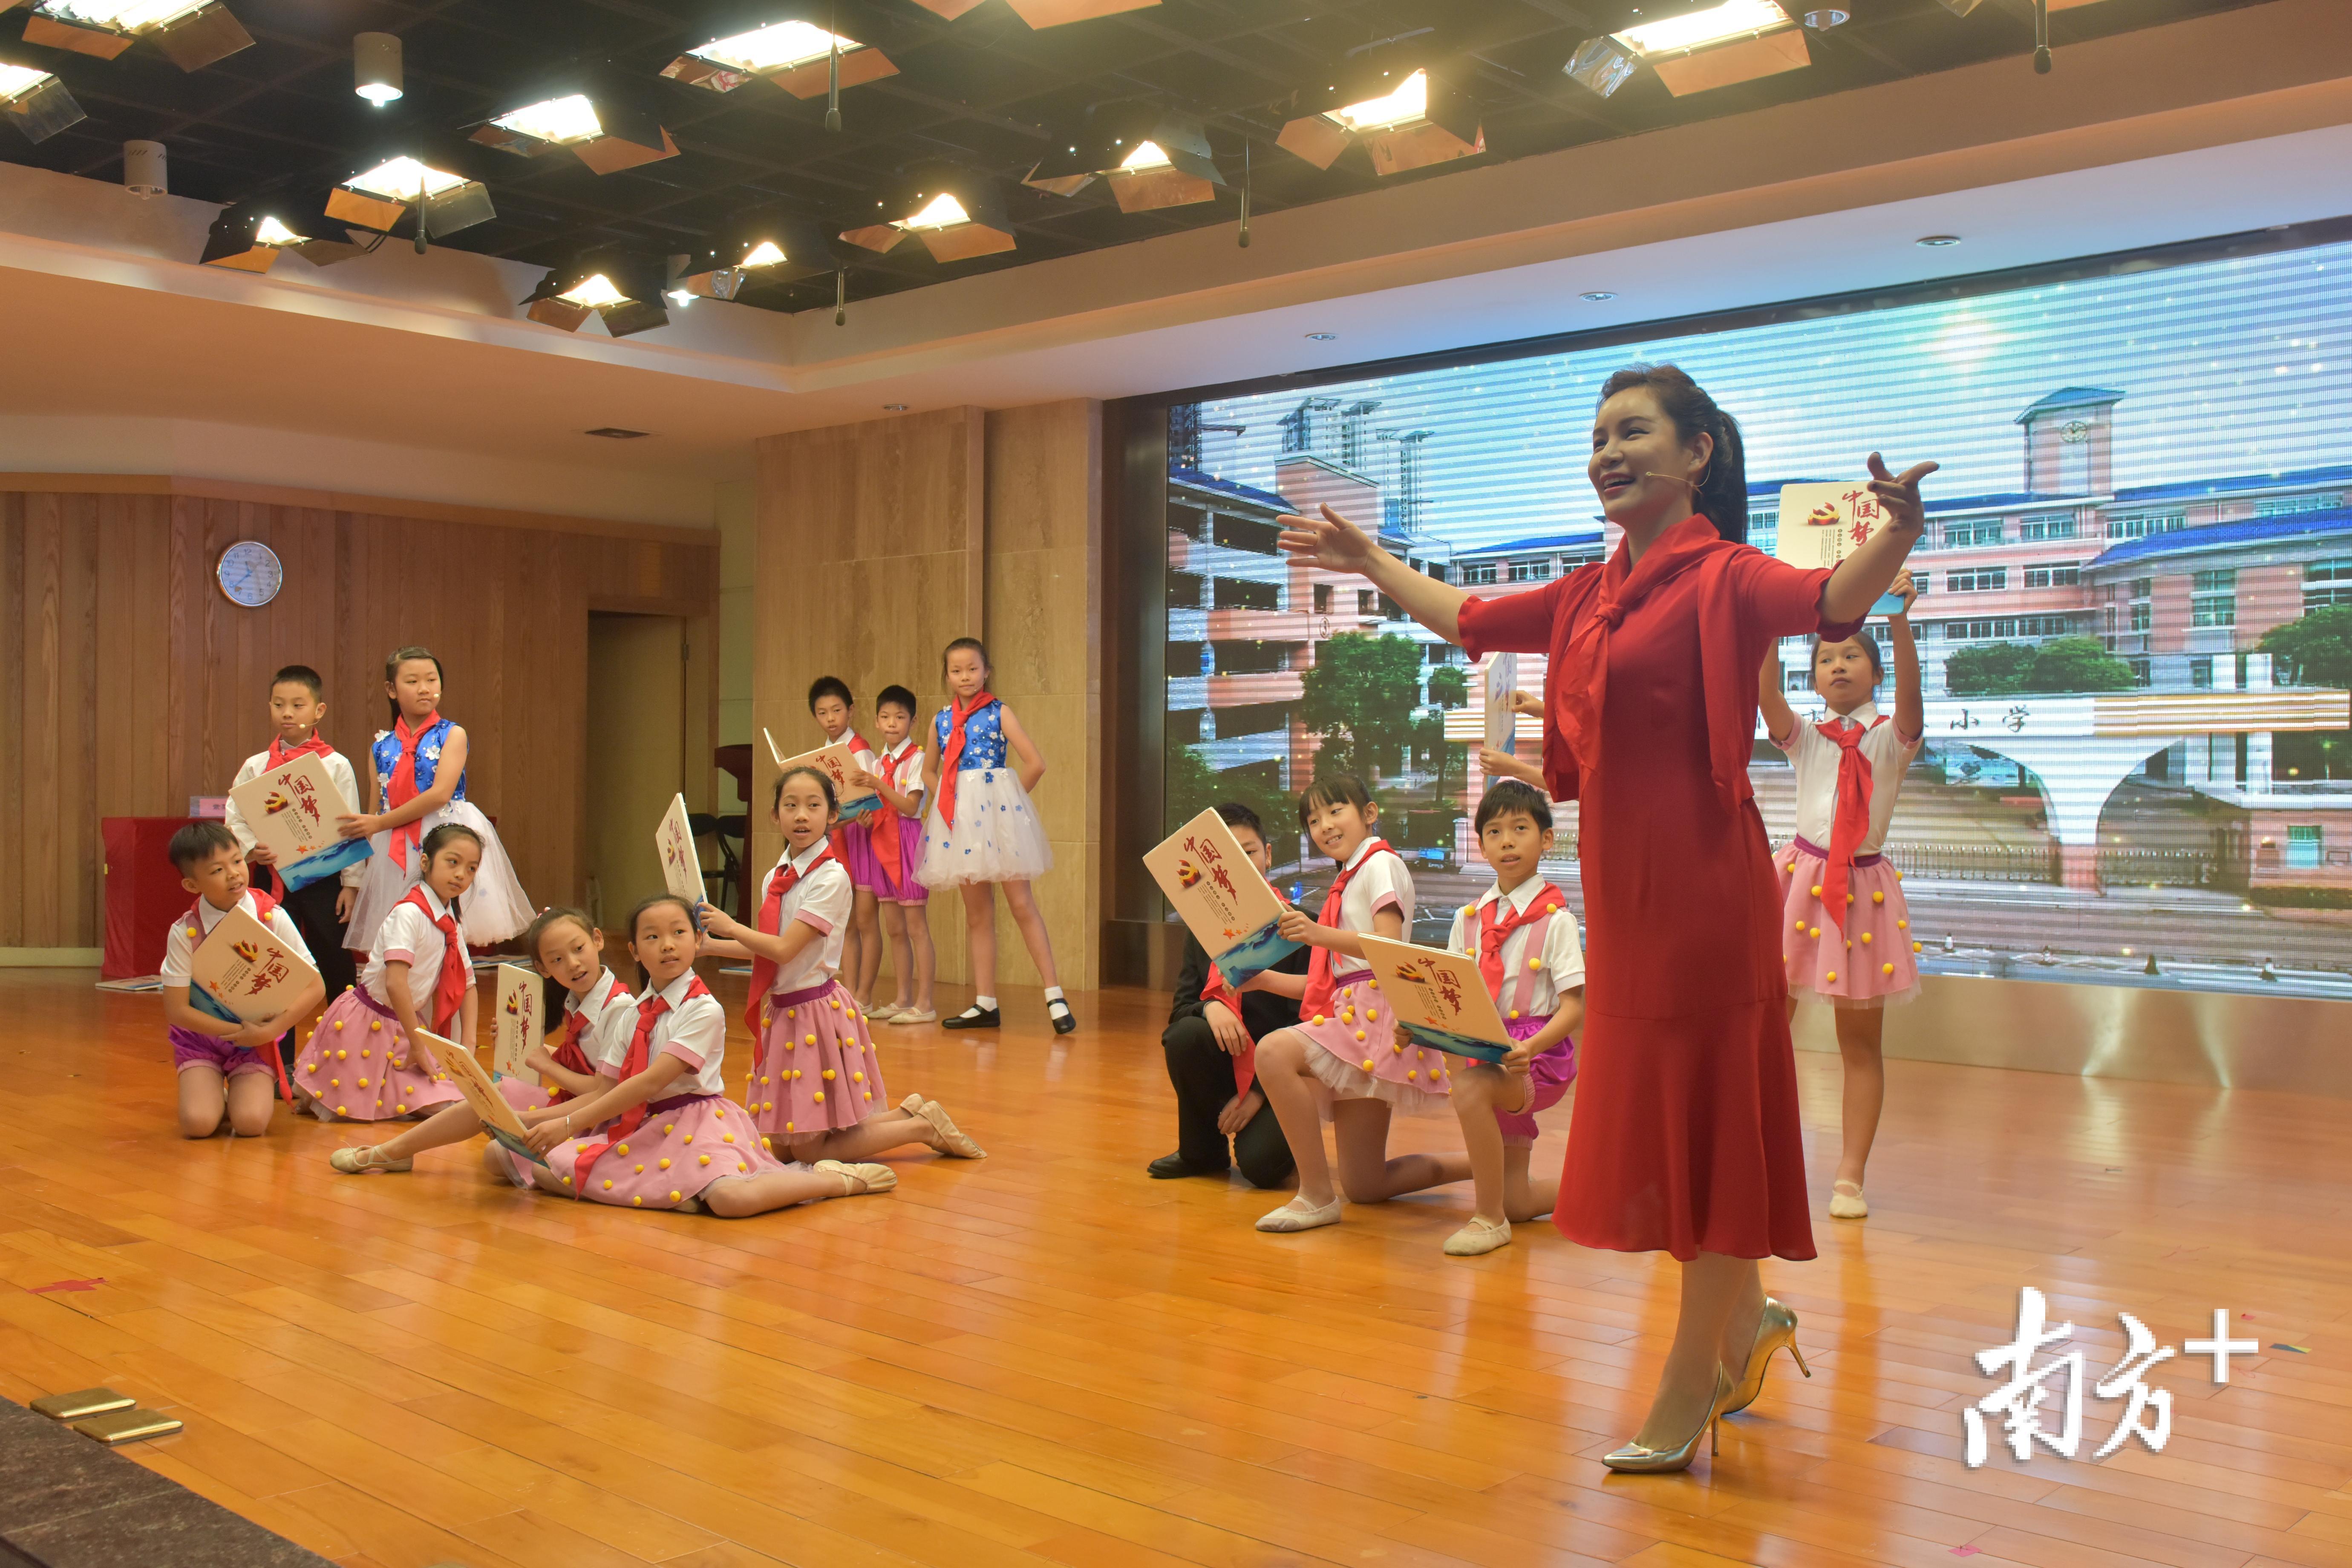 紫茶小学将《中国梦·我的梦》学习读本与课内外活动相融合。图片来自于蓬江区教育局